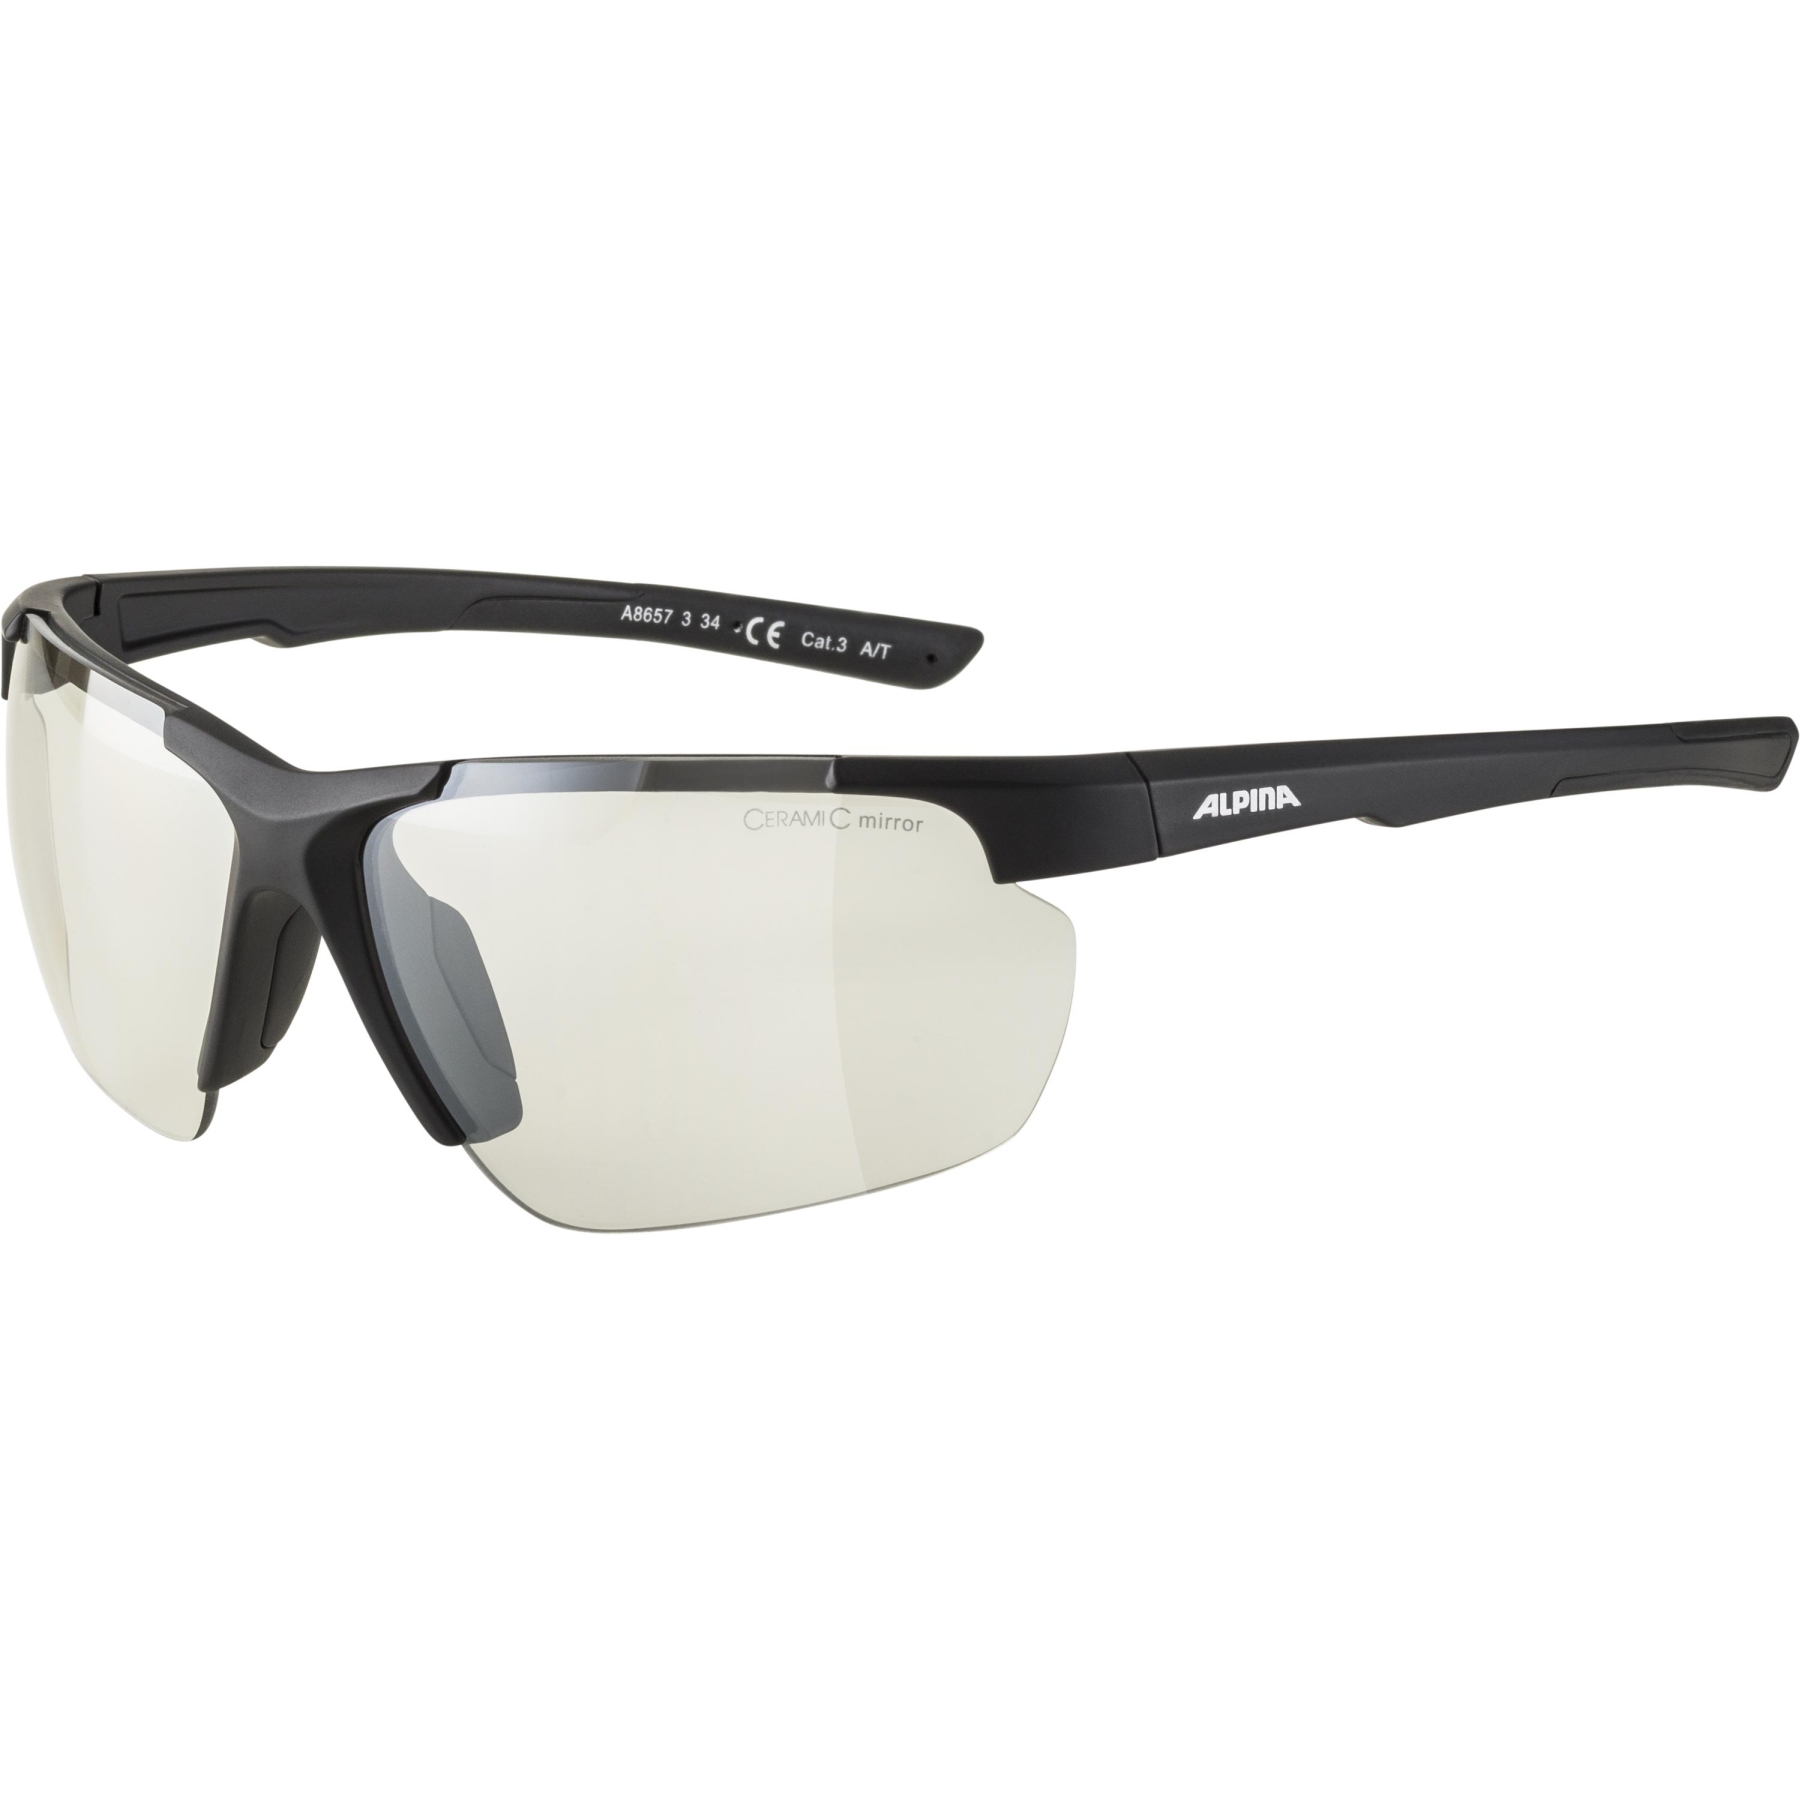 Productfoto van Alpina Defey HR Glasses - black matt / clear mirror